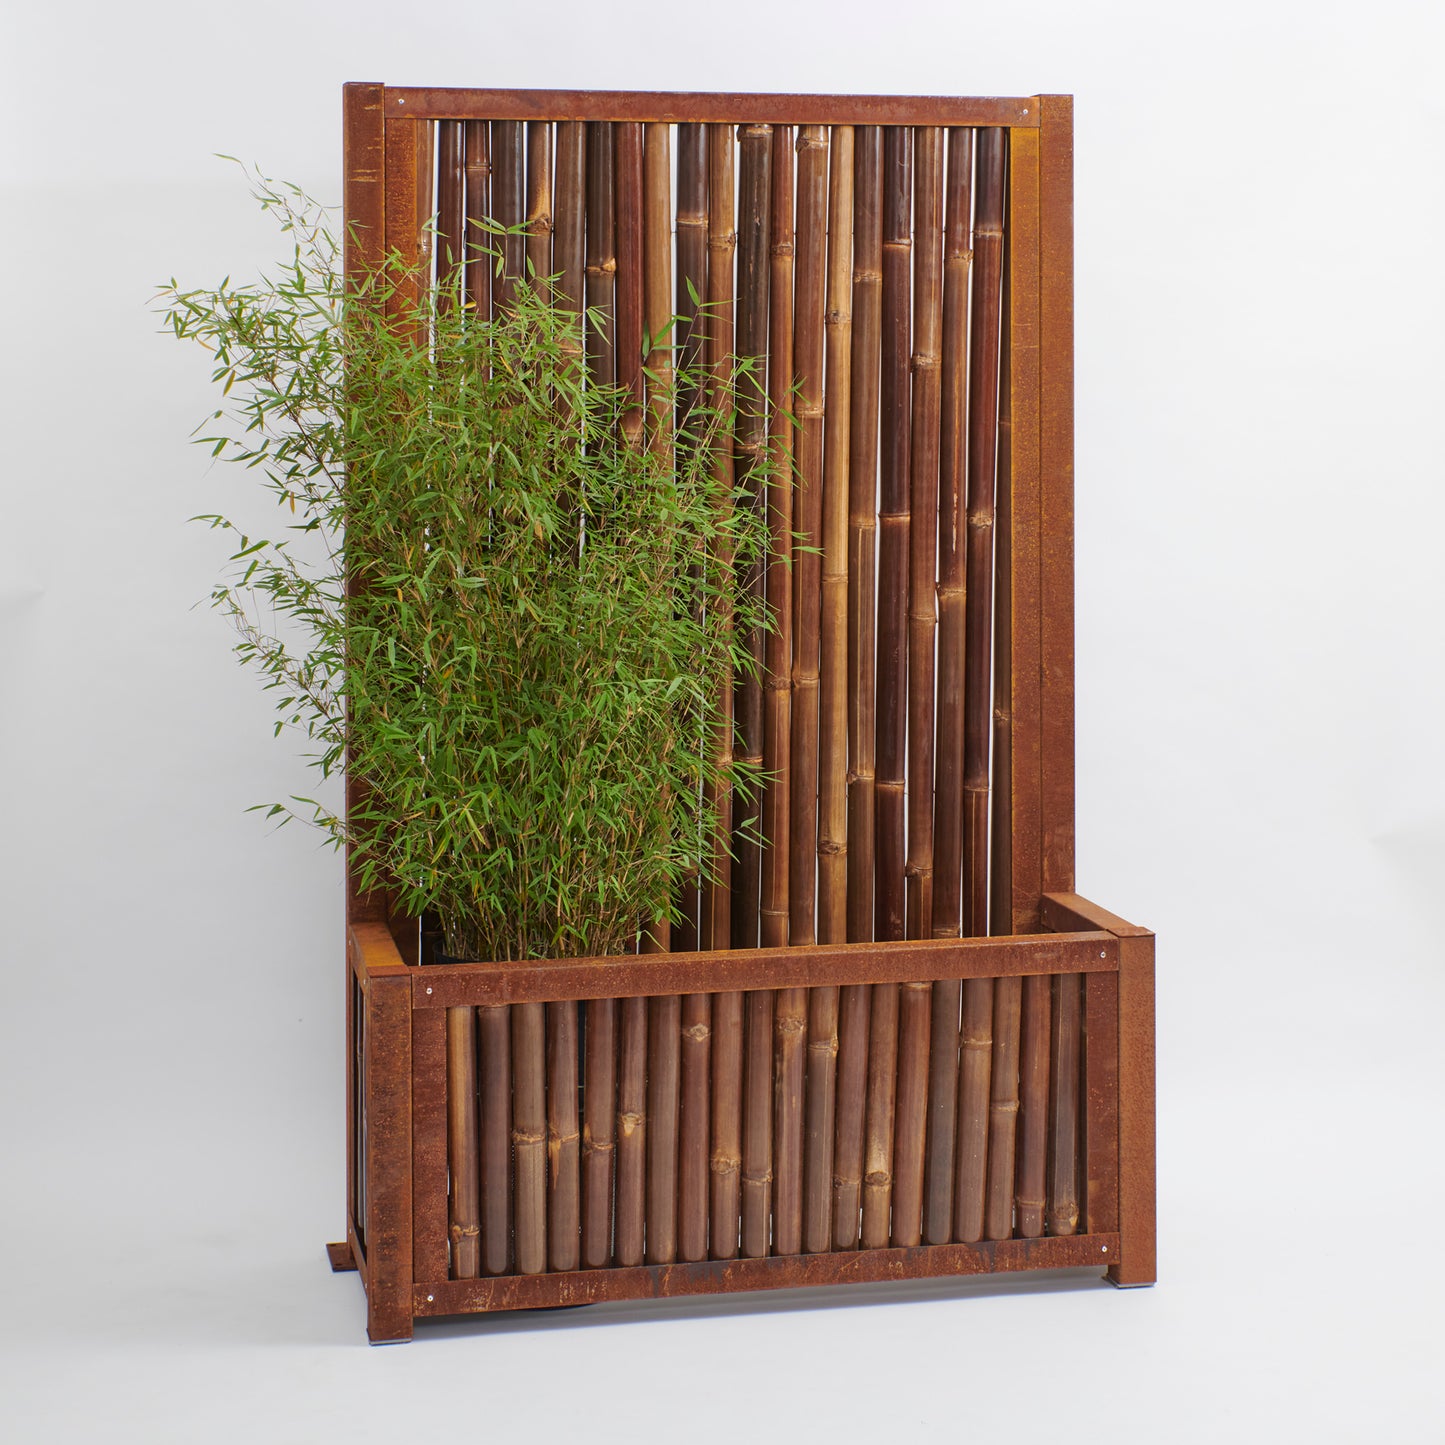 Hochbeet mit Sichtschutz - Cortenstahl mit dunklem Bambus als Füllung (verschiedene Größen)